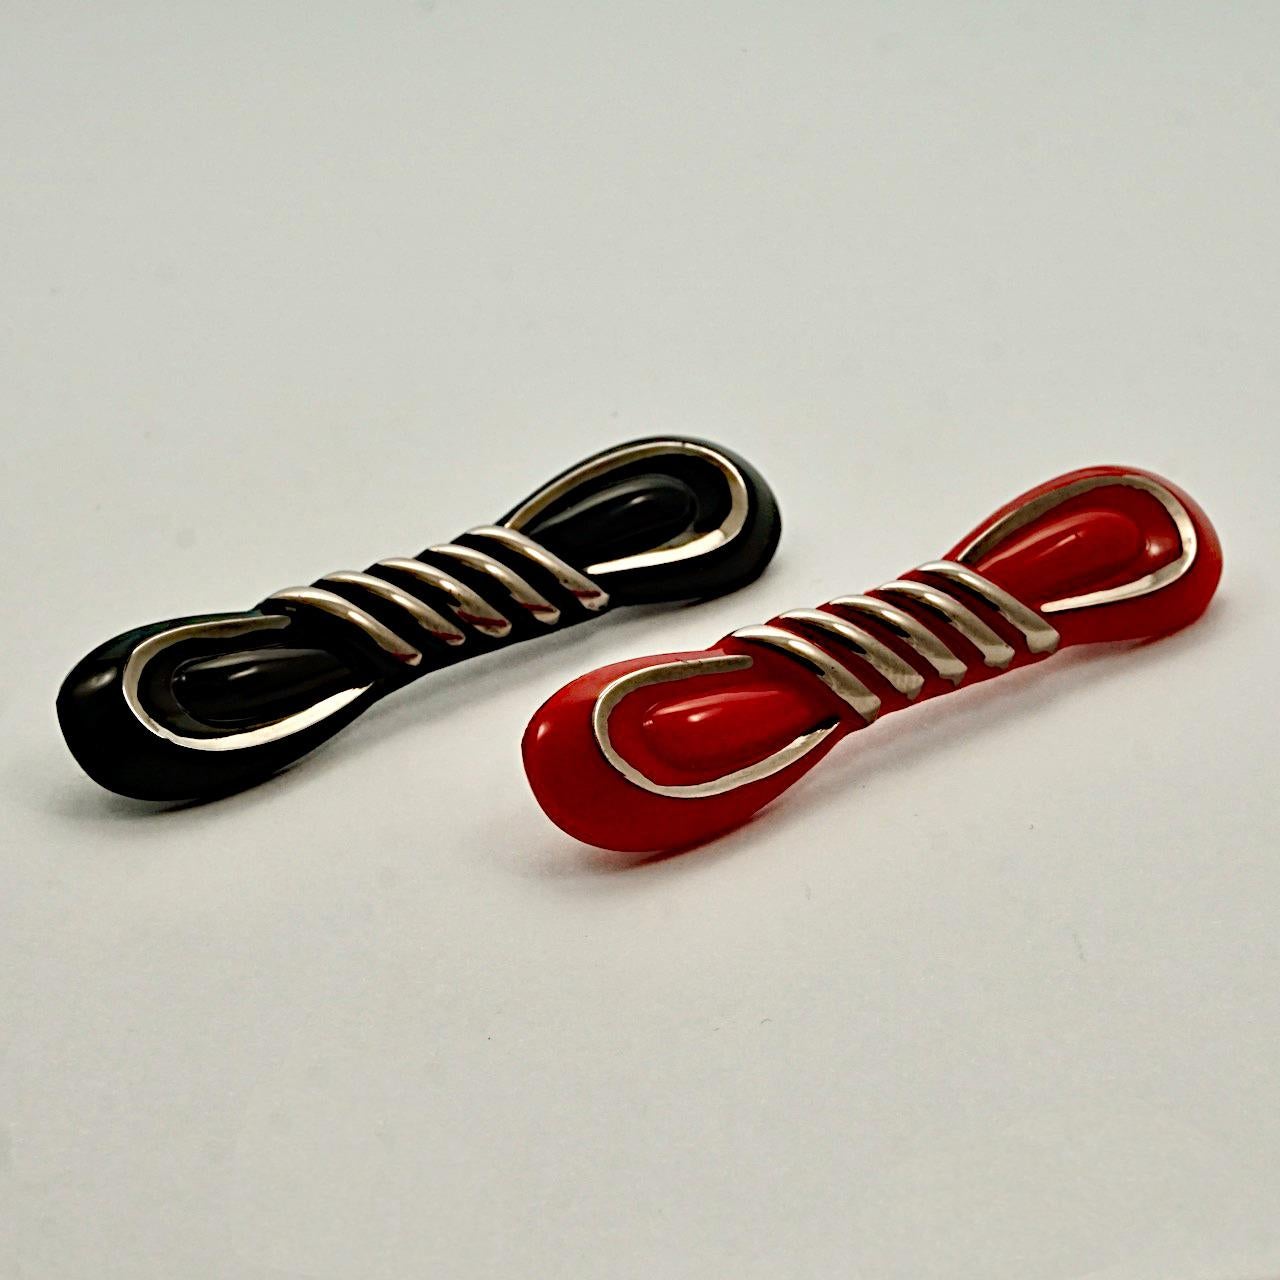 Wunderschönes Art-Déco-Broschenpaar aus rotem und schwarzem Glas, mit silberfarbenen Highlights. Länge 6,6 cm / 2,5 Zoll und Breite 1,4 cm / .55 Zoll.

Es handelt sich um sehr stilvolle und ungewöhnliche Broschen aus rotem und schwarzem Glas aus den